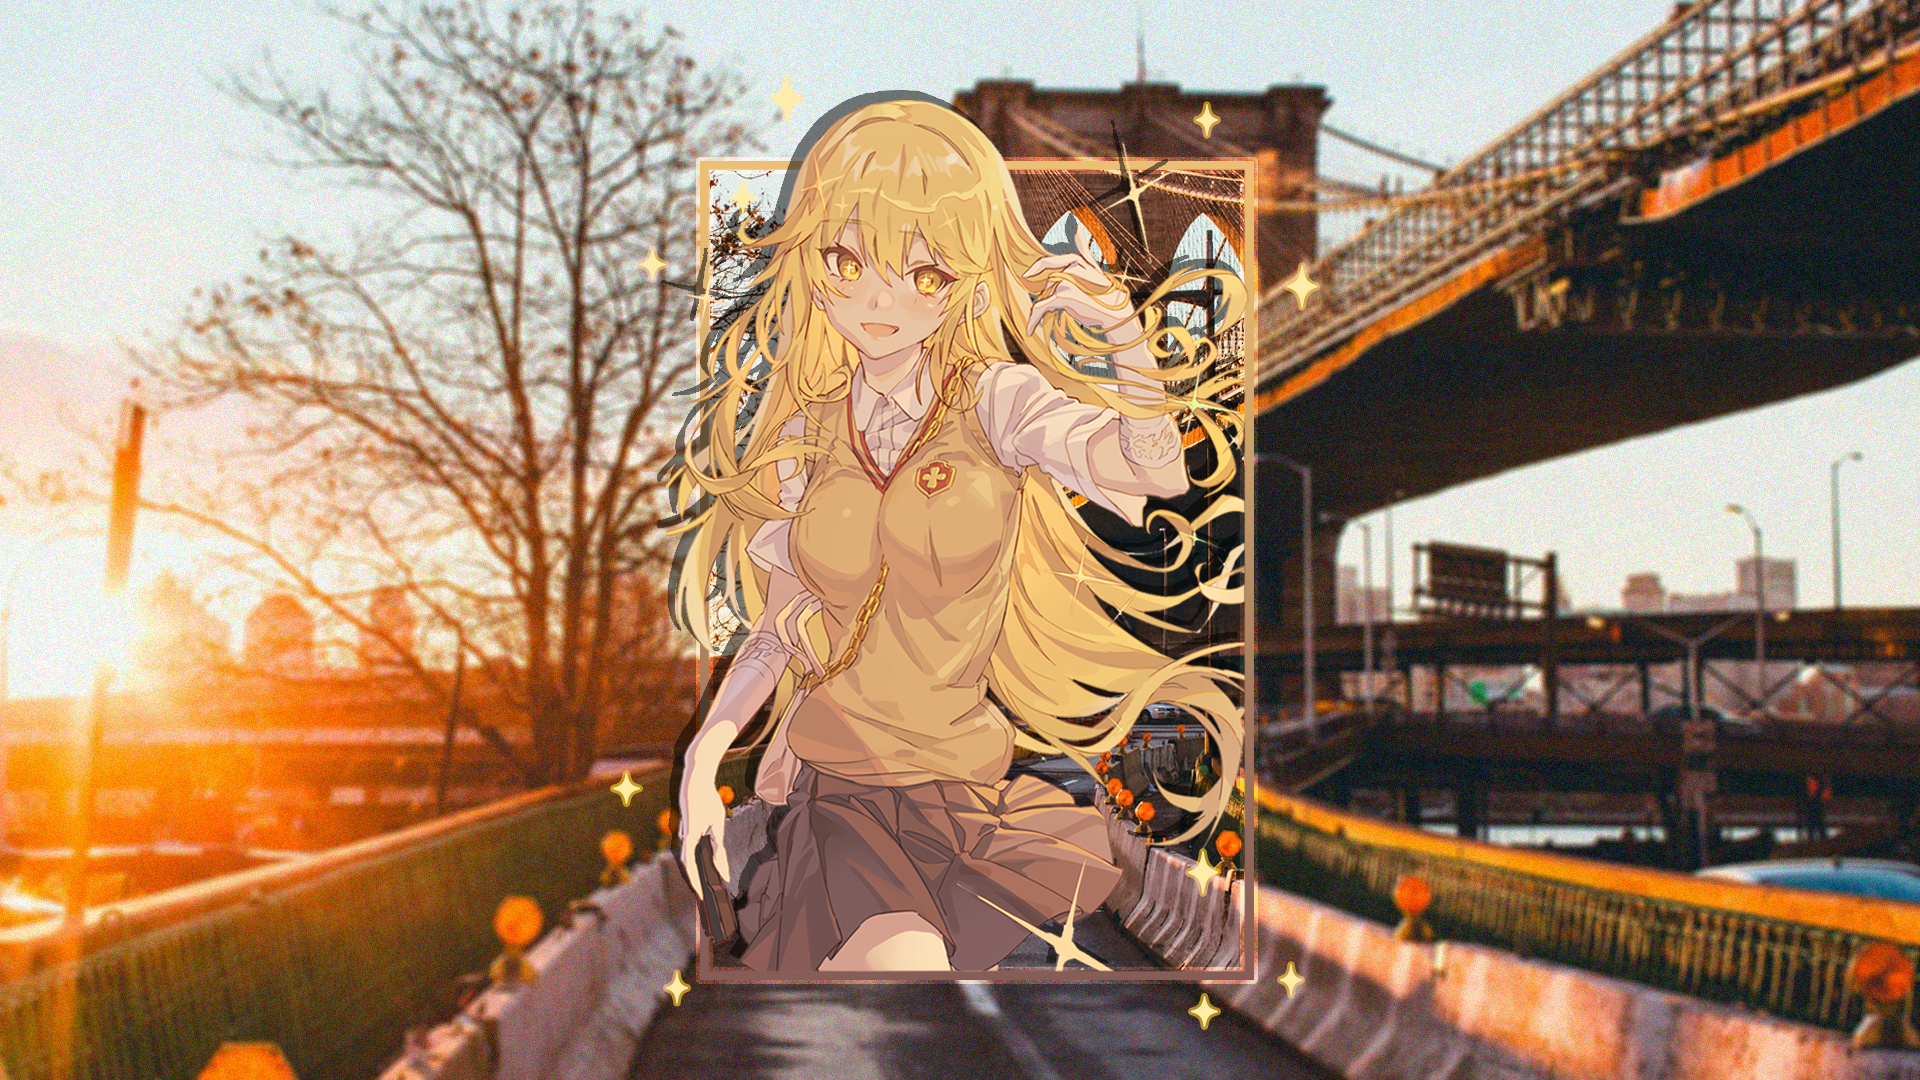 Shokuhou Misaki To Aru Kagaku No Railgun Anime Girls Bridge Picture In Picture Blonde Sunset Sunset  1920x1080